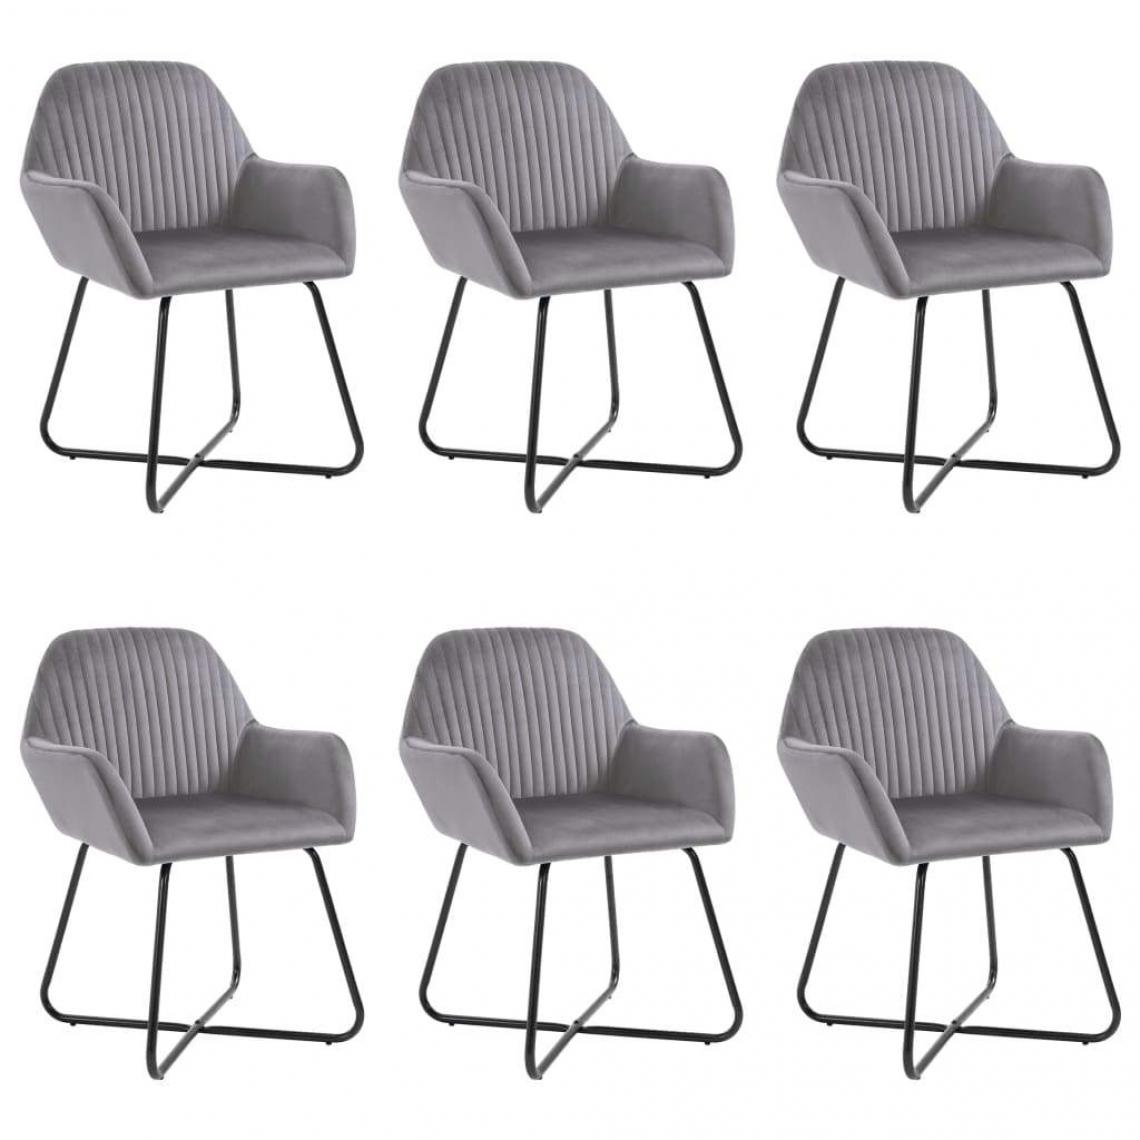 Decoshop26 - Lot de 6 chaises de salle à manger cuisine design moderne velours gris CDS022514 - Chaises